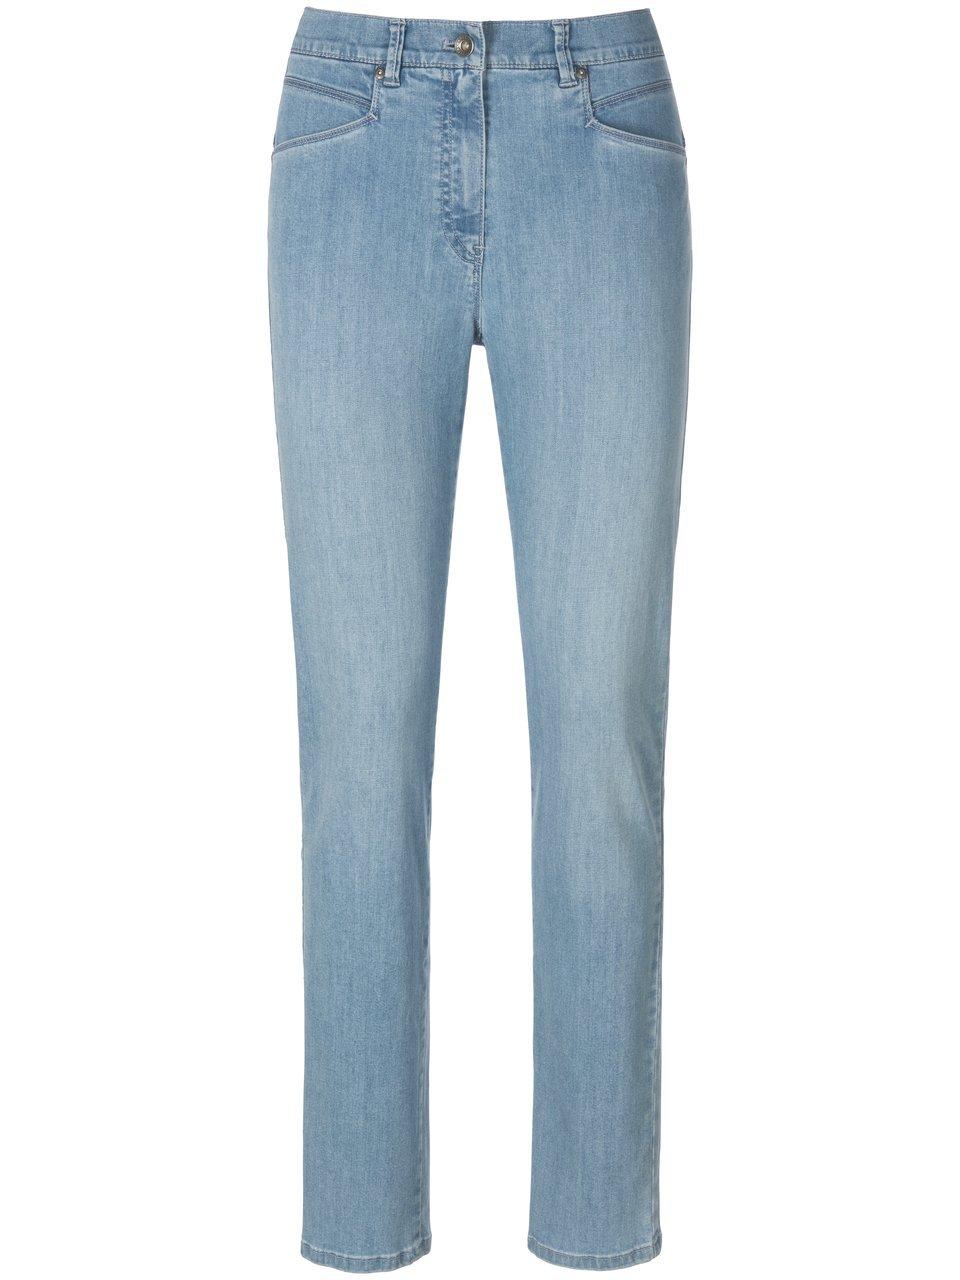 Raphaela by Brax Dark blue Caren Plus-Zauber-Jeans denim - Comfort - Modell